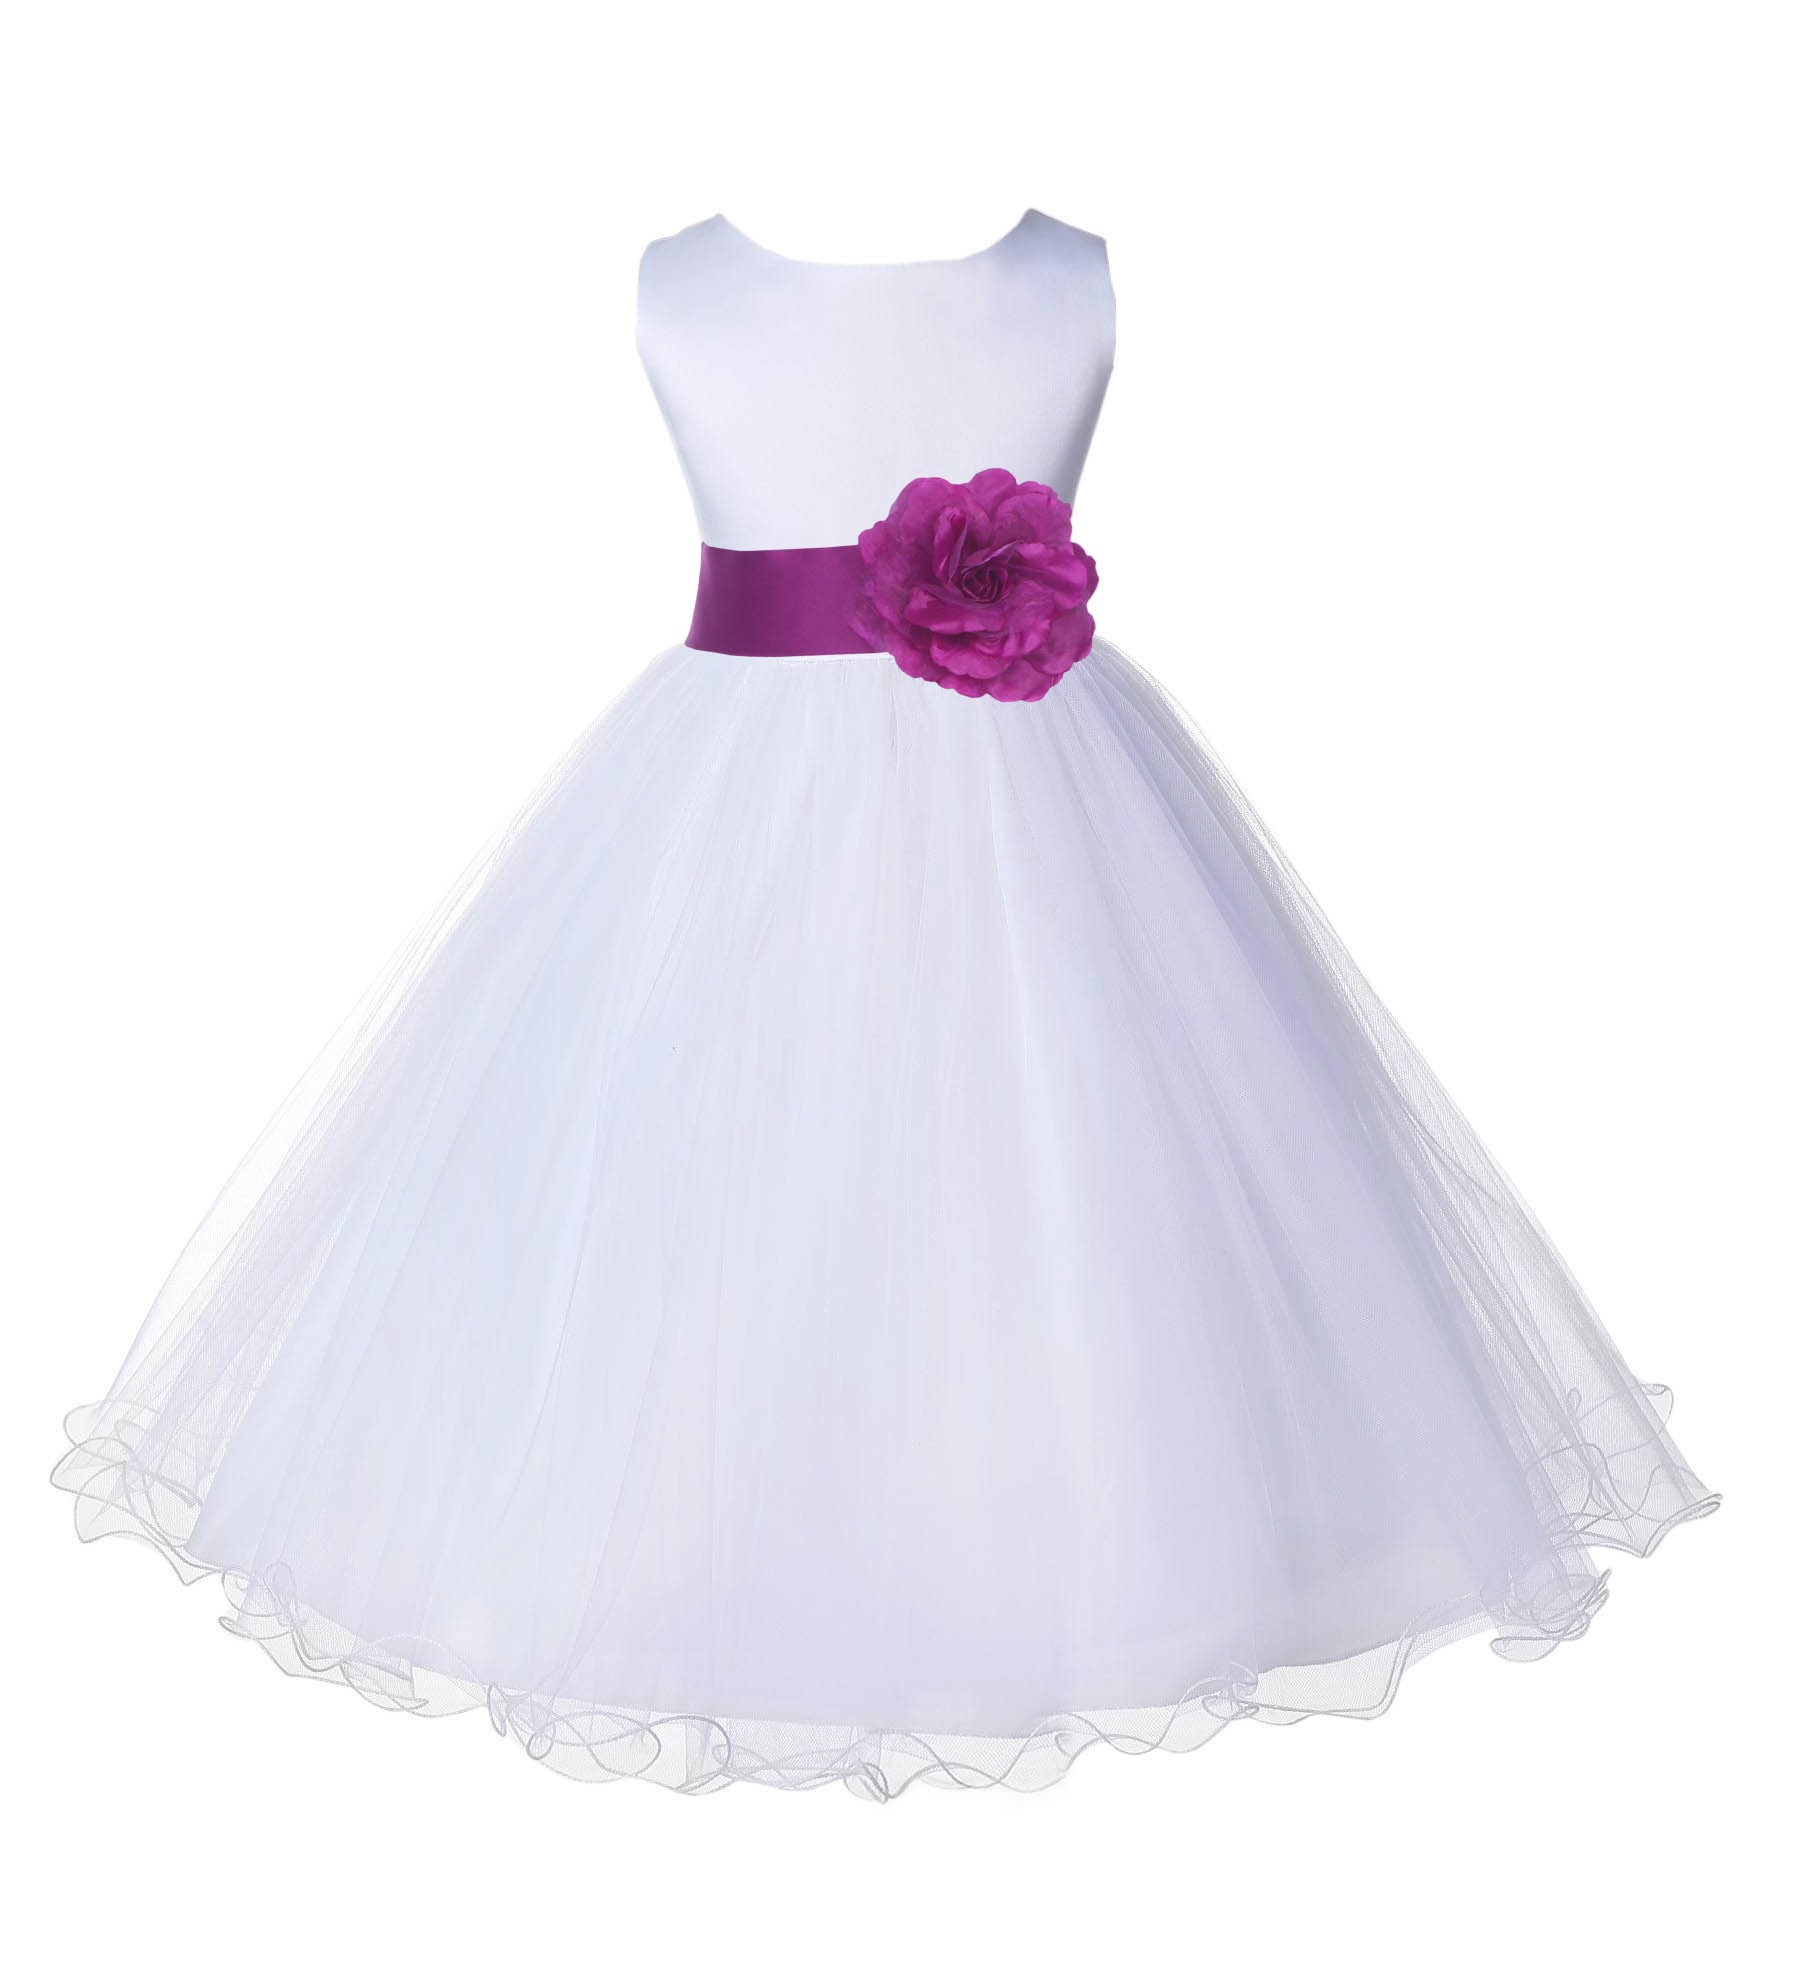 White/Raspberry Tulle Rattail Edge Flower Girl Dress Wedding Bridal 829S